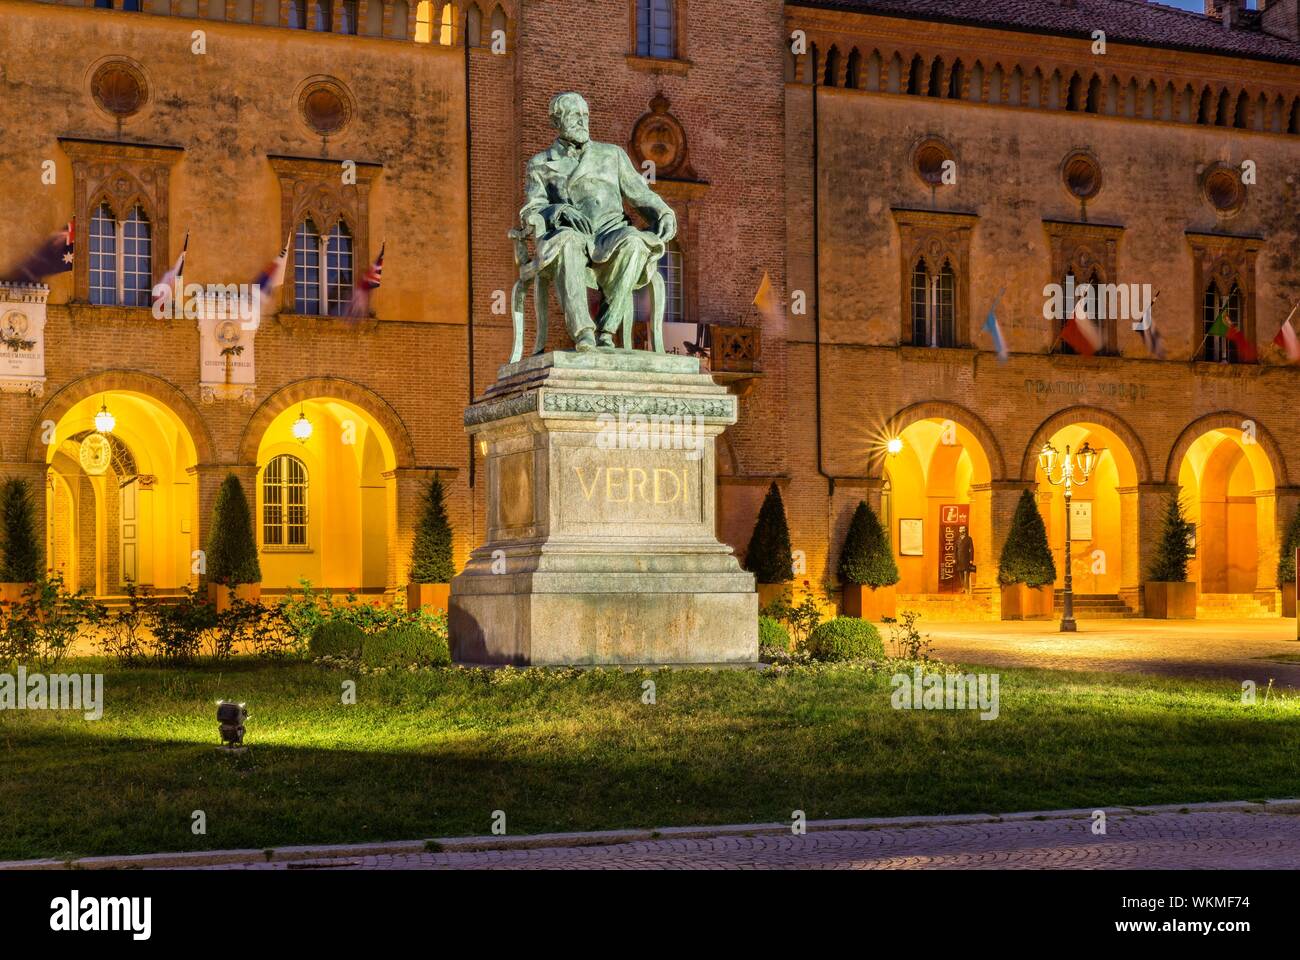 Verdi illuminée monument situé en face de Rocca Pallavicino avec Opéra Teatro Giuseppe Verdi, Busseto, Province de Parme, Emilie-Romagne, Italie Banque D'Images